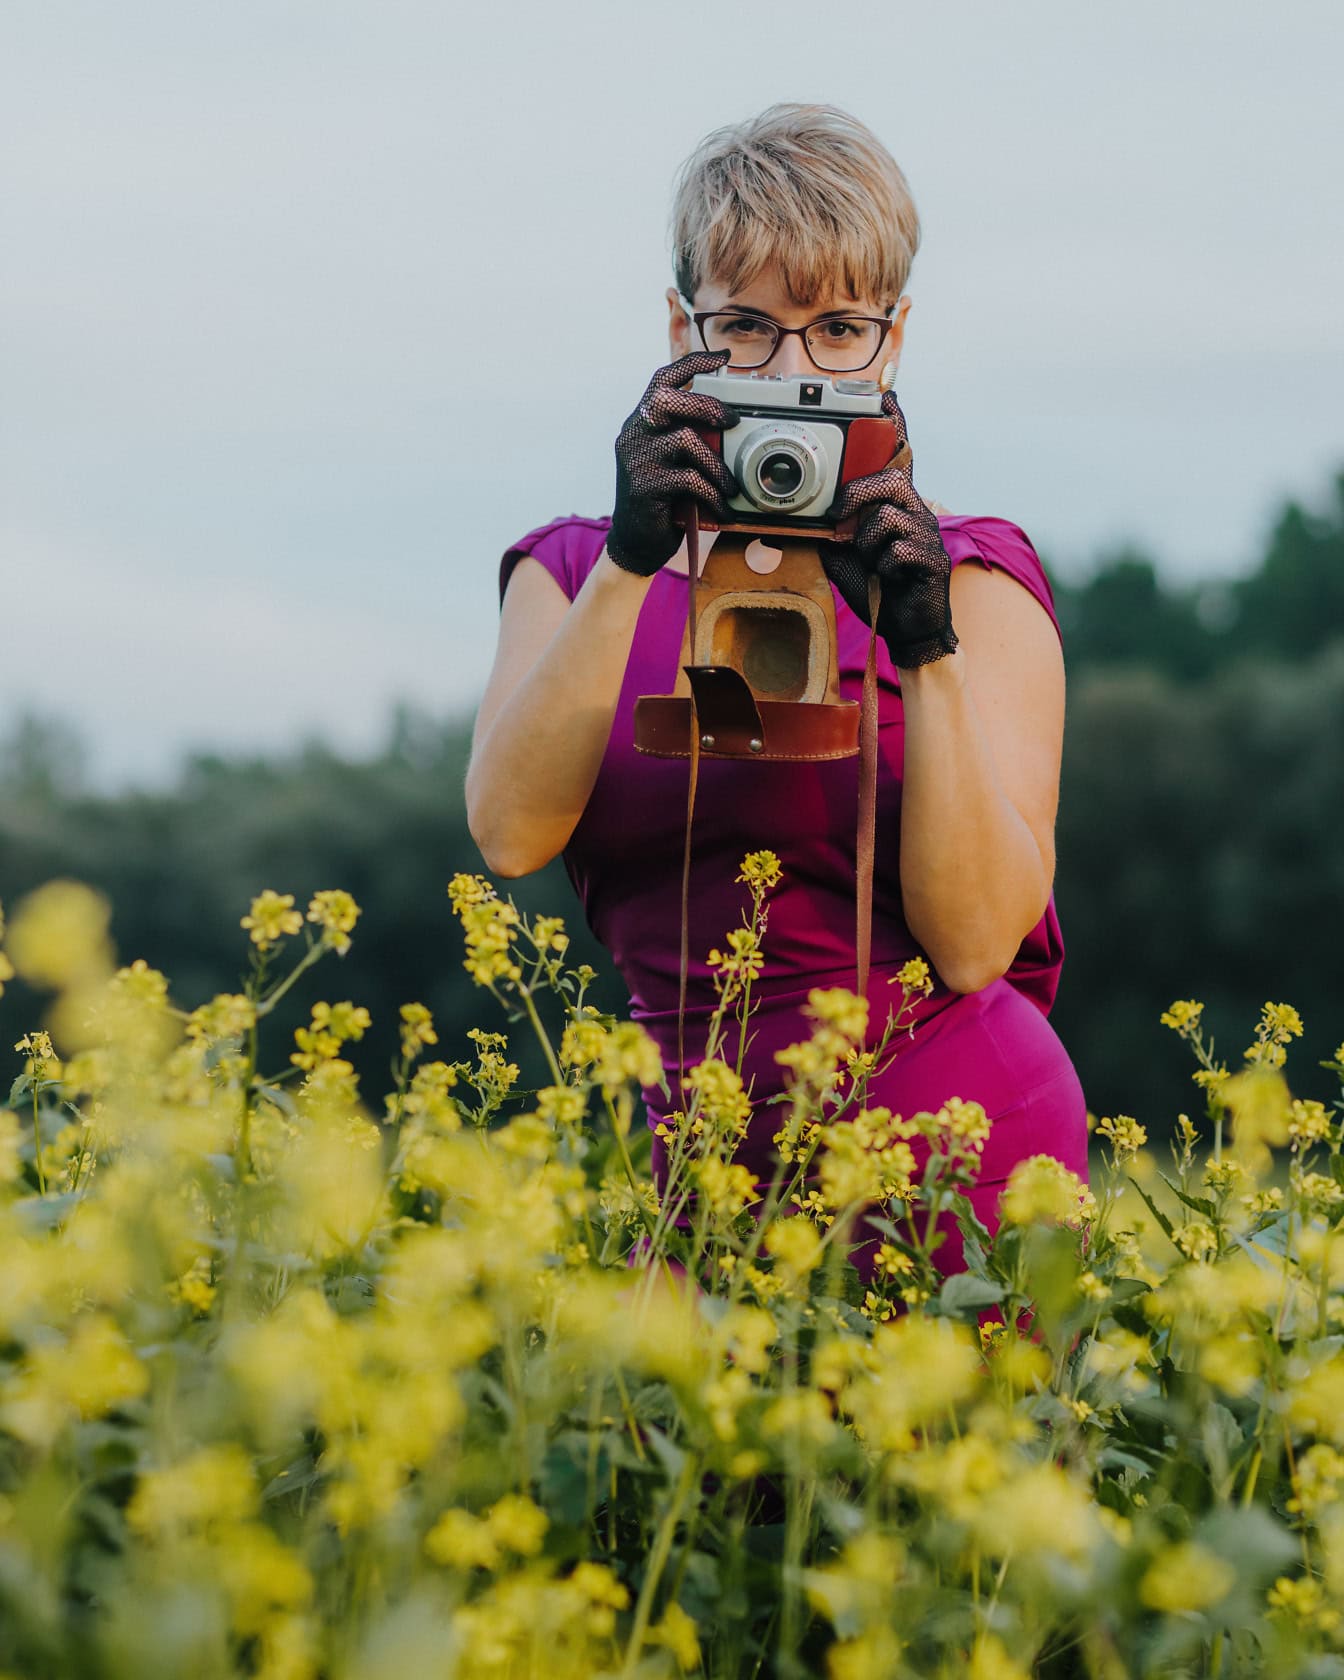 ผู้หญิงสวมชุดสีม่วงและถุงมือลูกไม้ถือกล้องเก่าแบบอะนาล็อกในทุ่งดอกไม้สีเหลือง